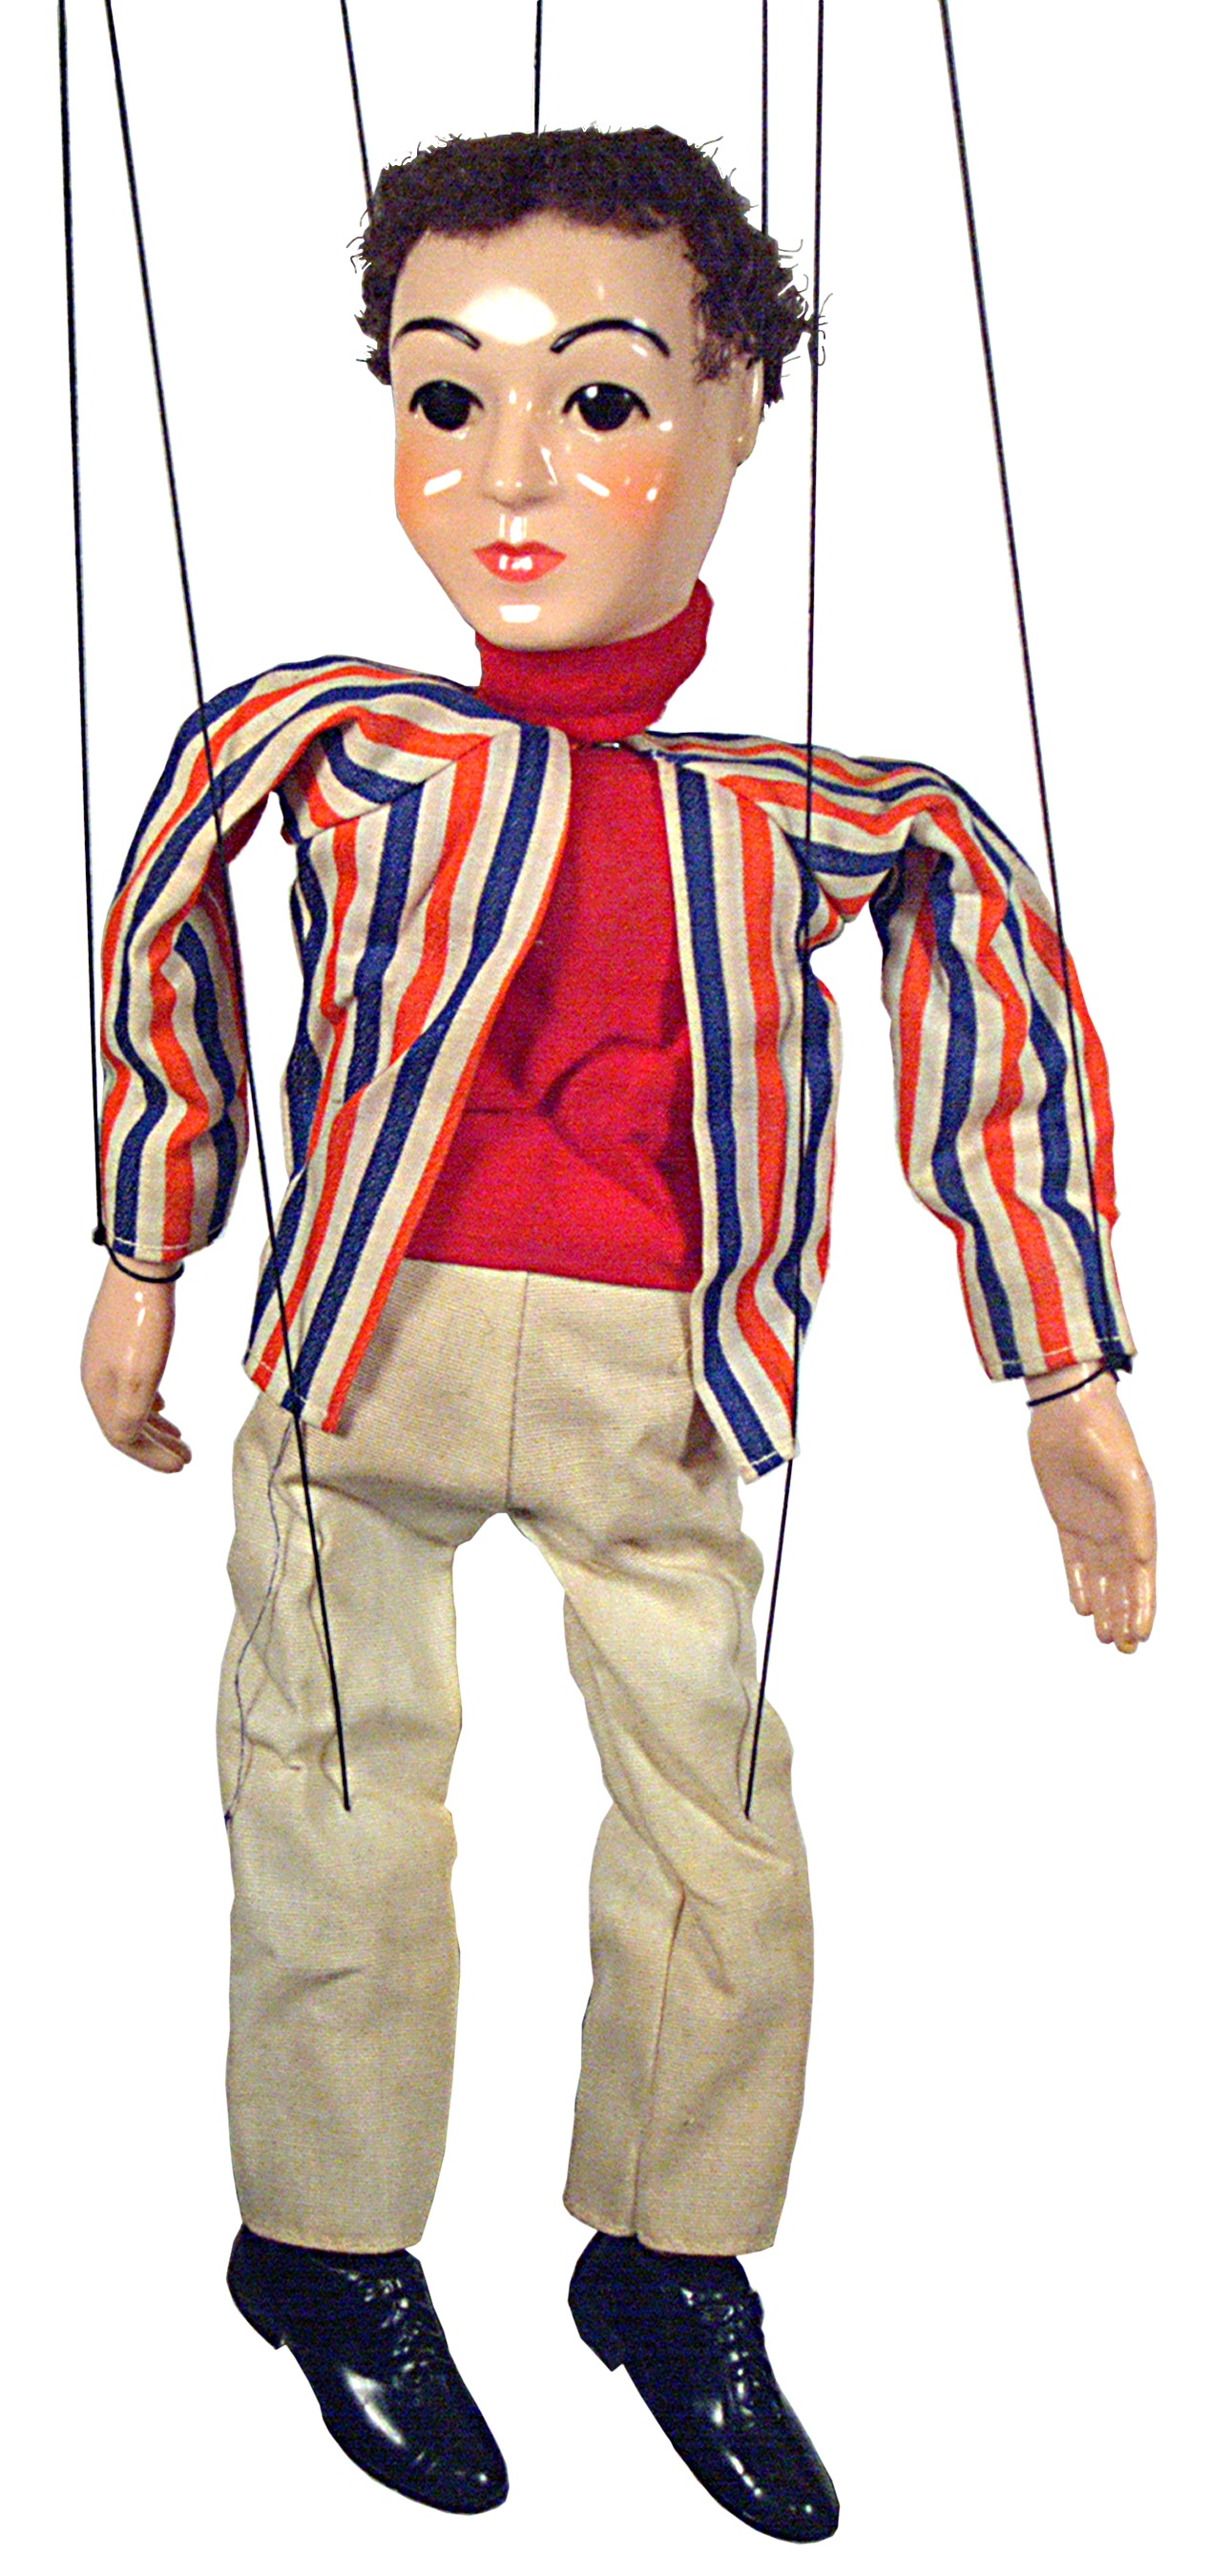 La imagen muestra marioneta de un chico, moreno de pelo corto y ojos oscuros. Vestido con un jersey rojo, pantalón beige y chaqueta de rayas rojas y azules